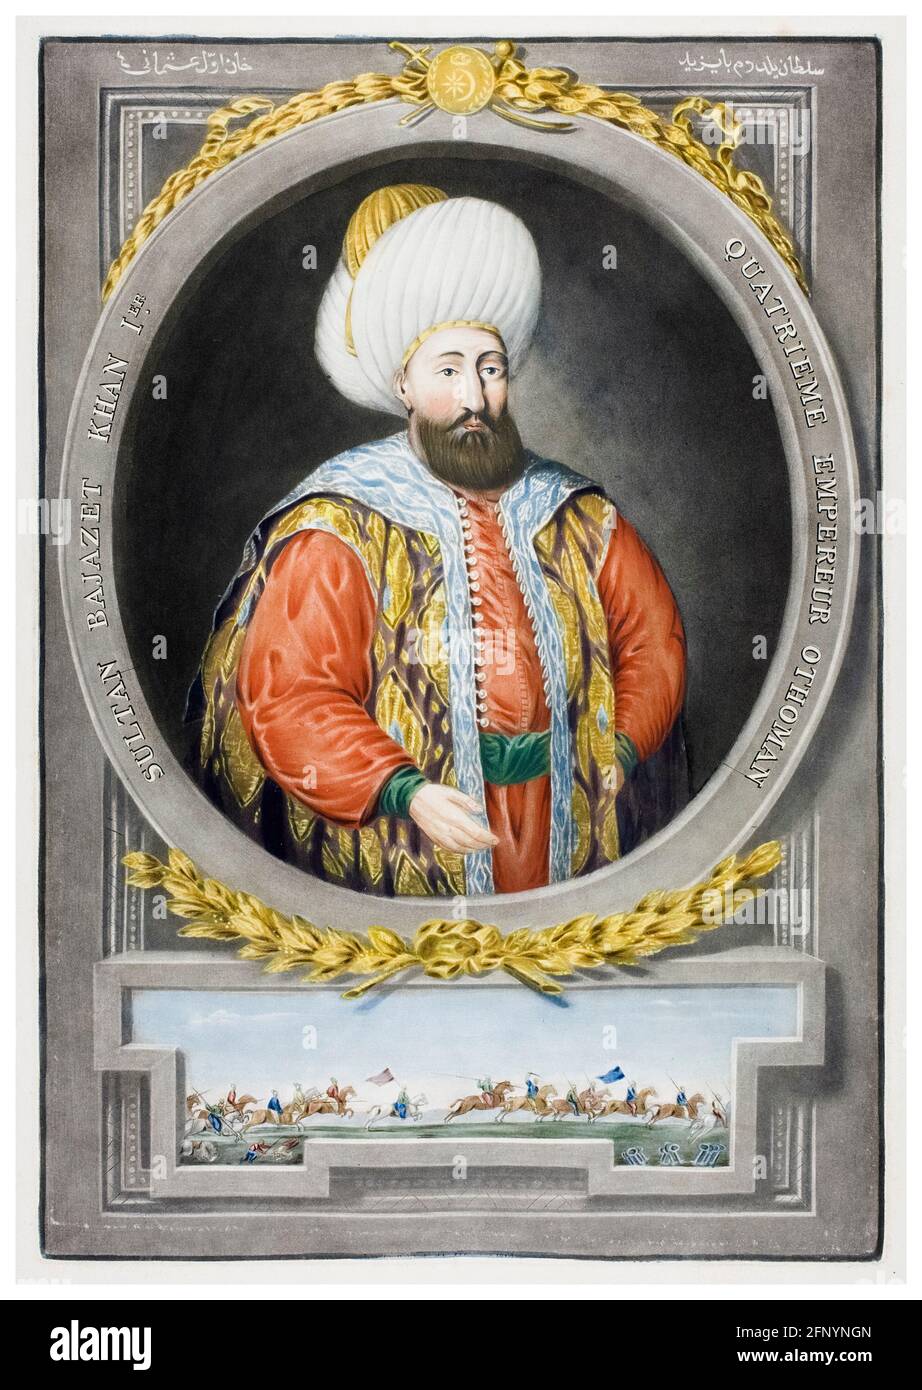 Bayezid I de Turquie (1360-1403), quatrième sultan de l'Empire ottoman, (1389-1402), portrait gravé par John Young, 1815 Banque D'Images